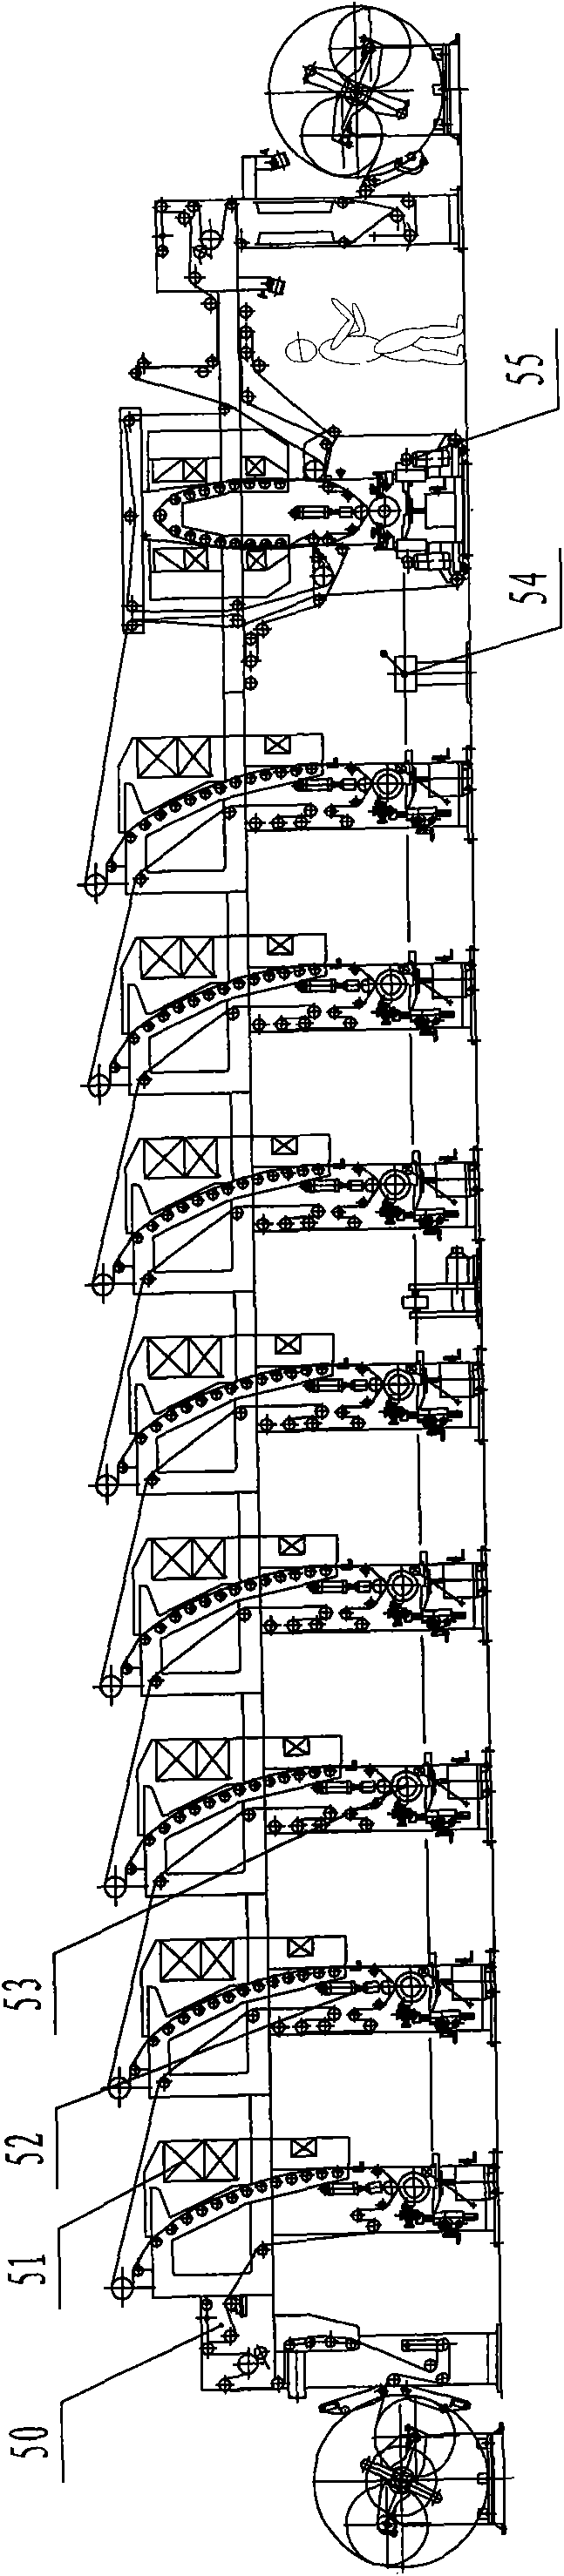 Multiple color press unit type gravure press